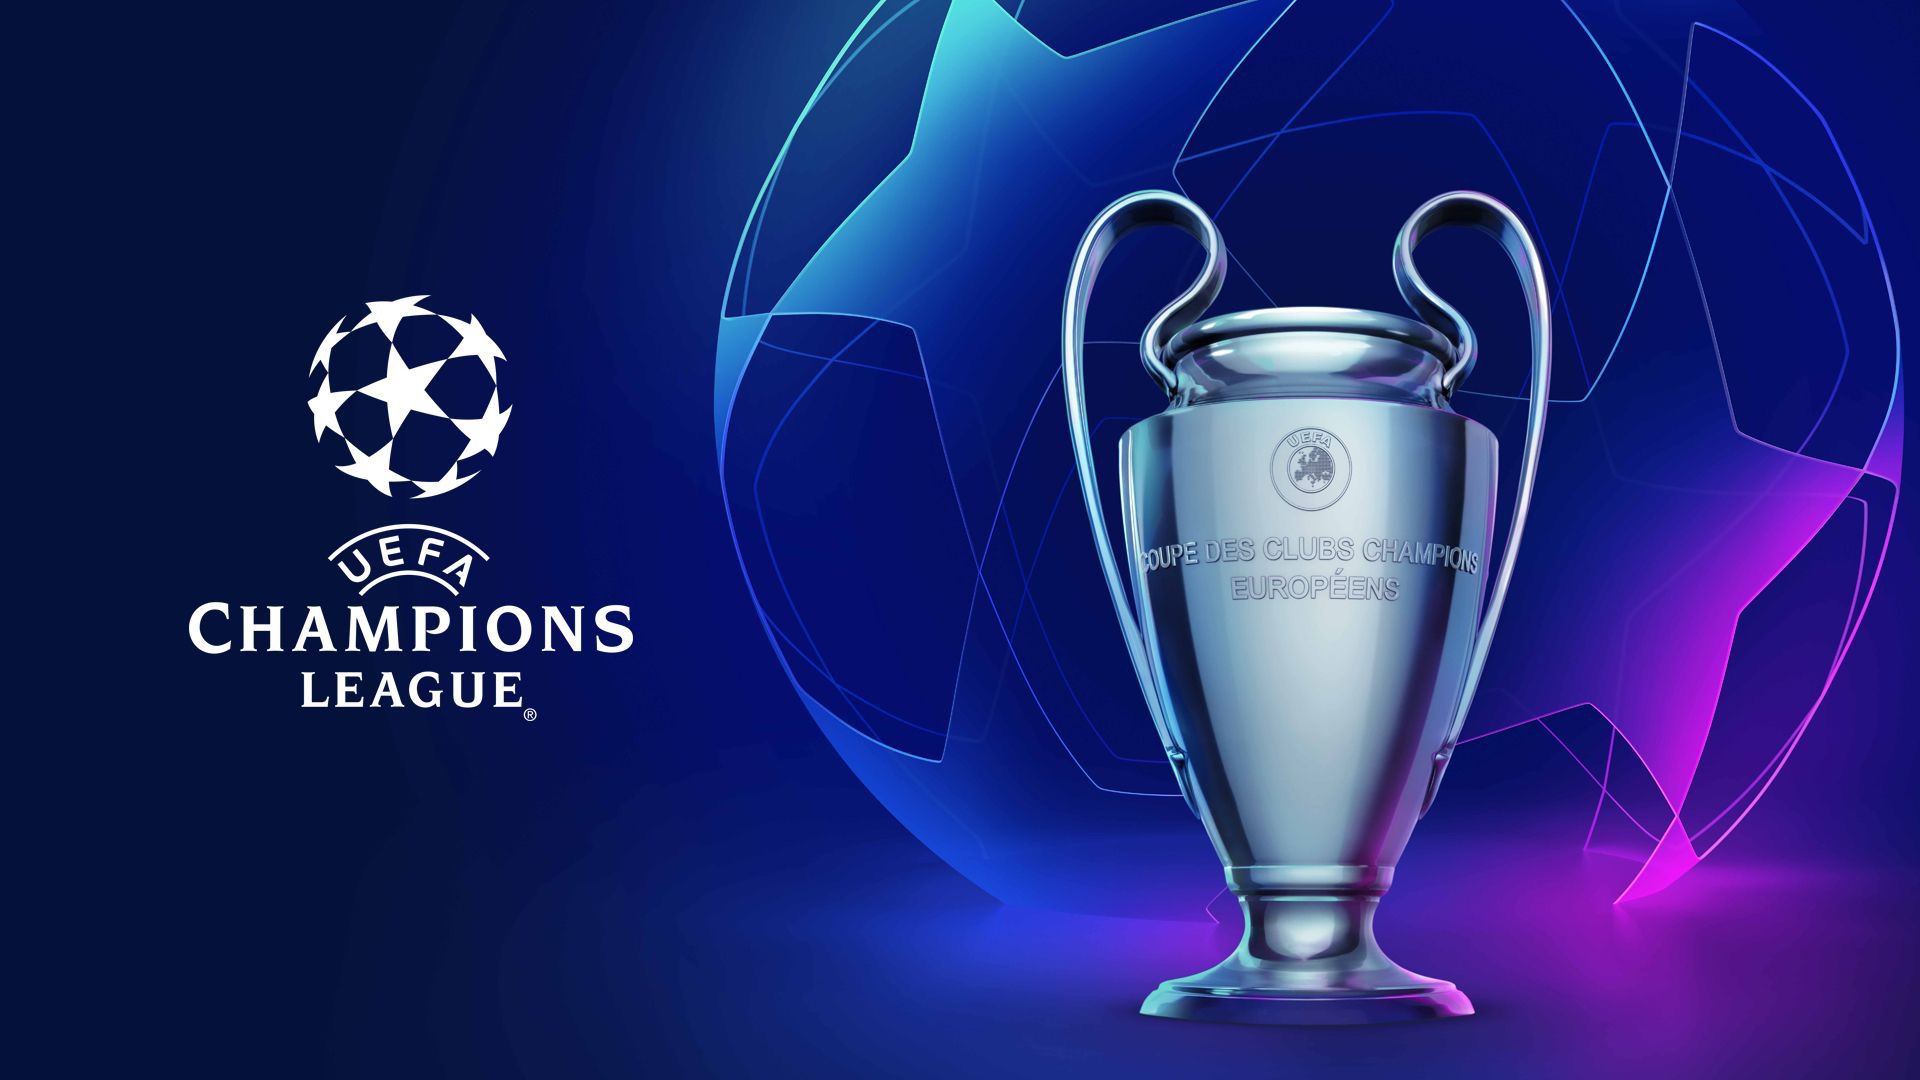 La UEFA Champions League rimane su Amazon Prime Video per altre tre